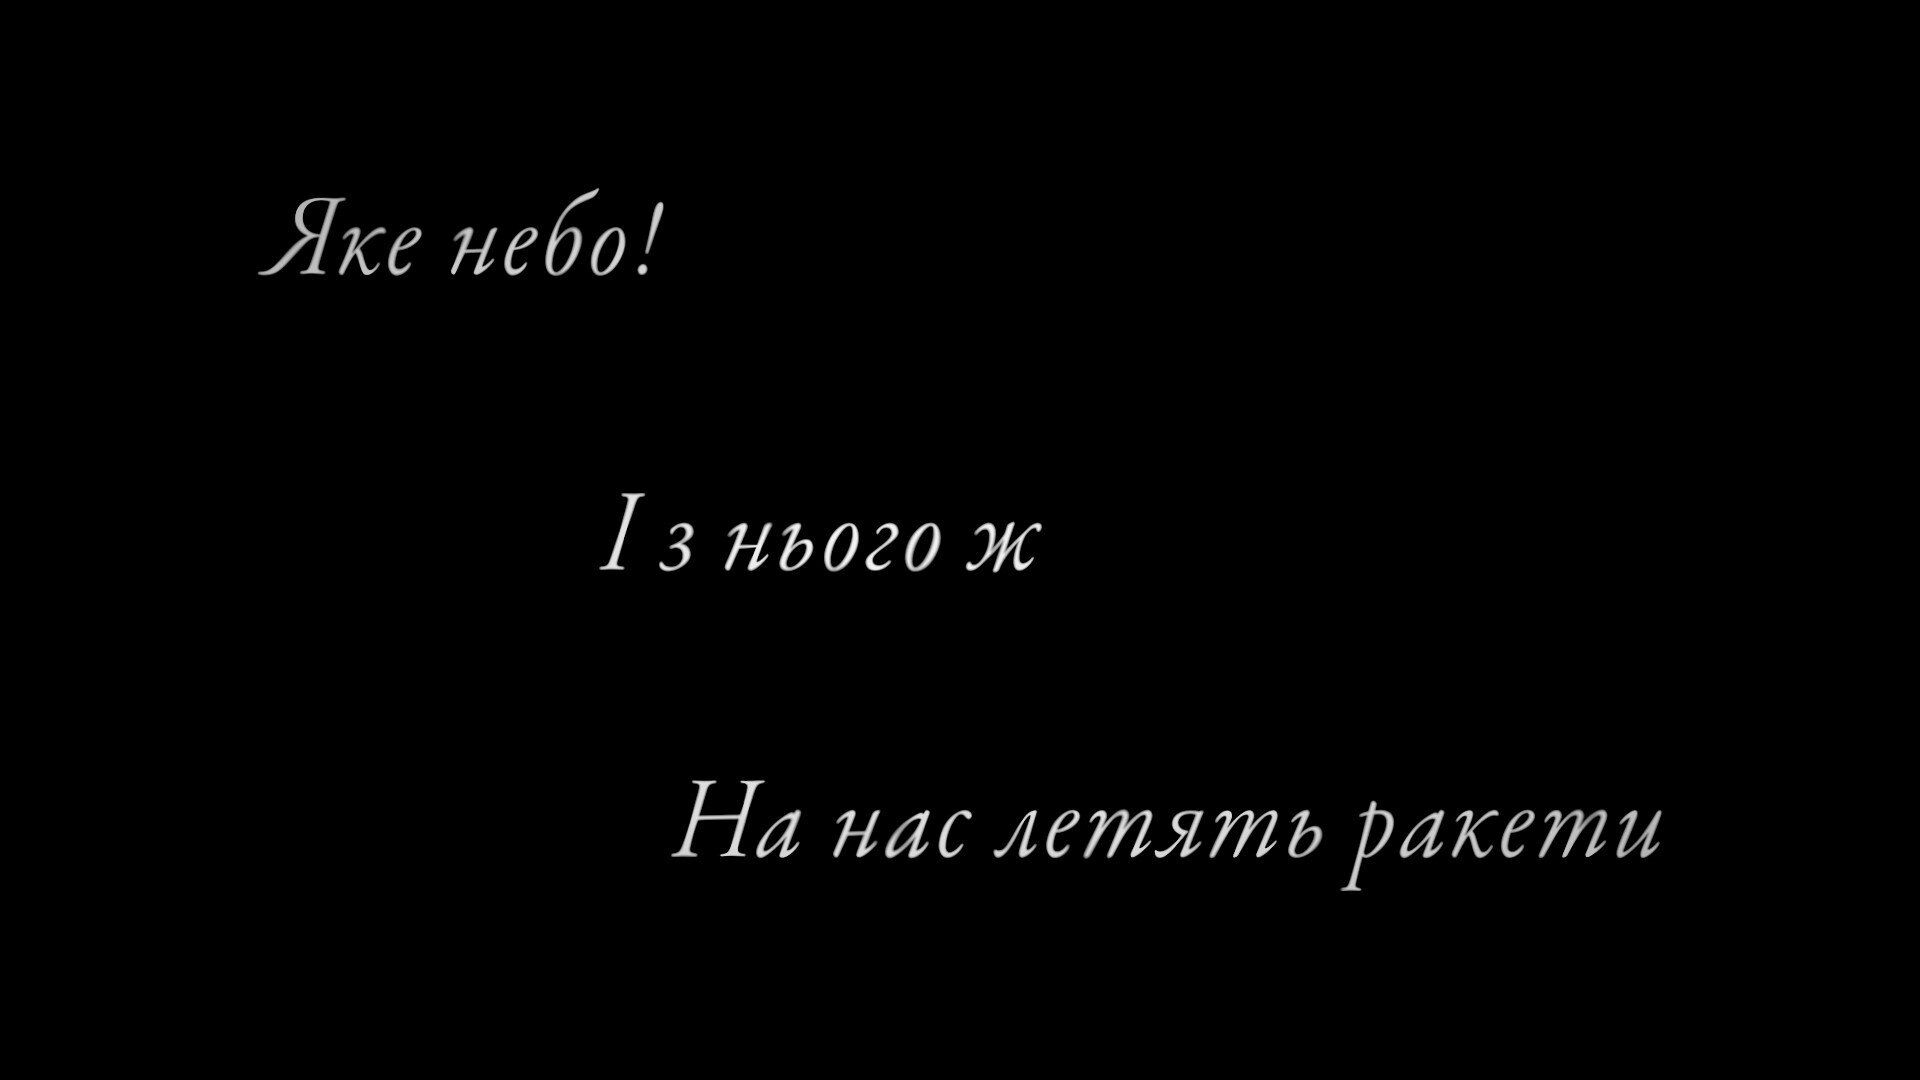 ウクライナ語の俳句を原文のキリル文字で画面に３行に分けて表示